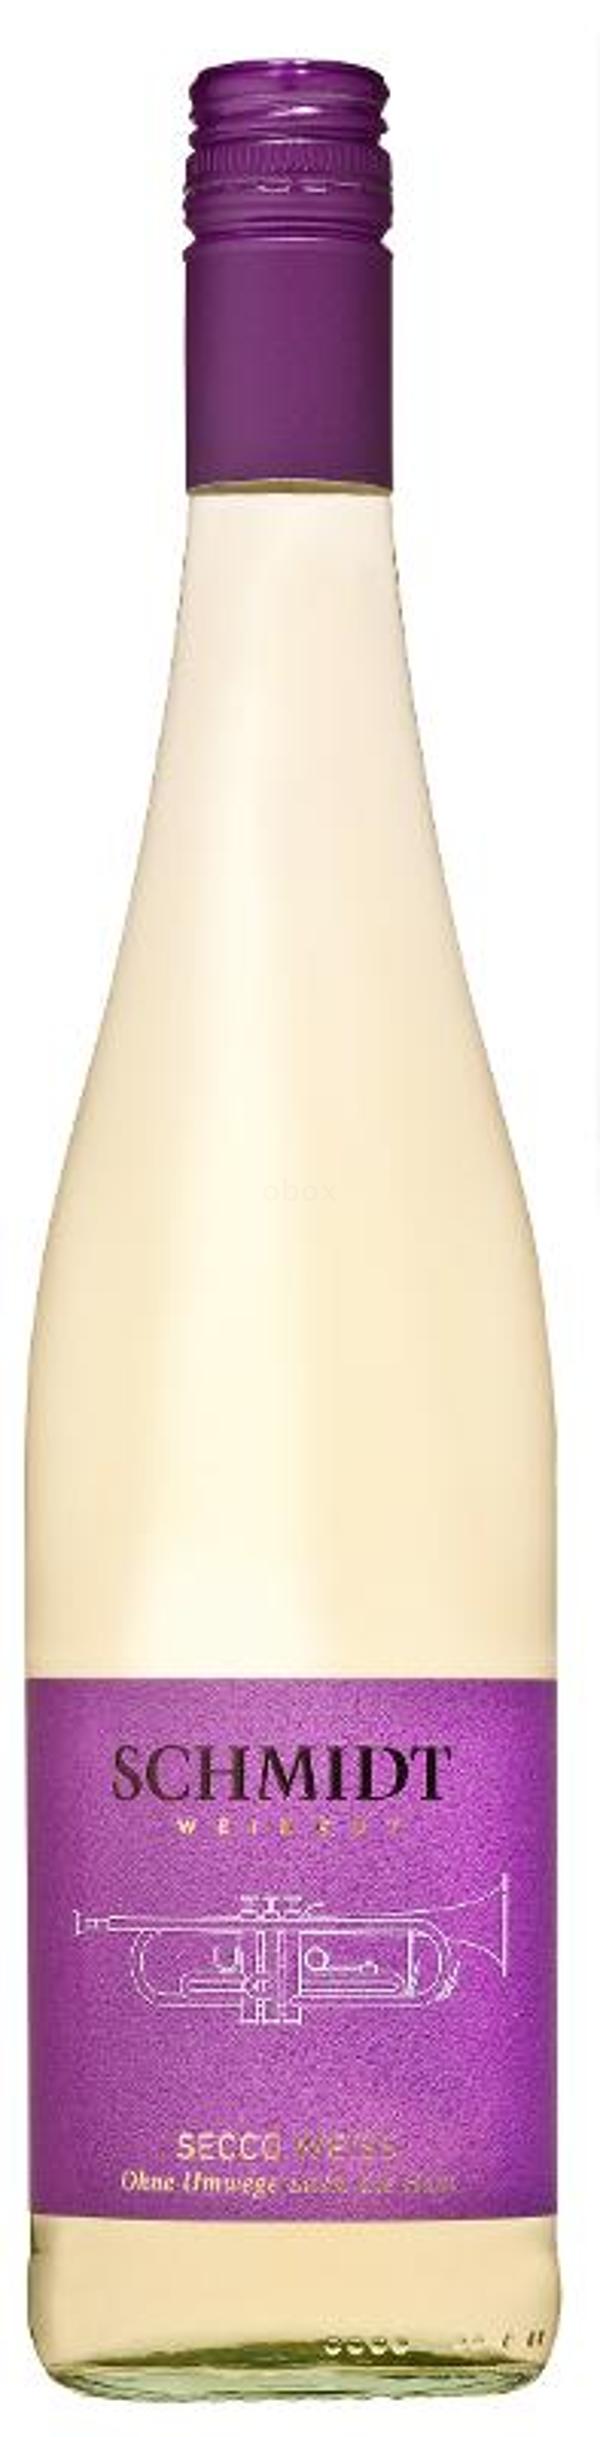 Produktfoto zu Secco weiß Weingut Schmidt, 0,75l, halbtrocken